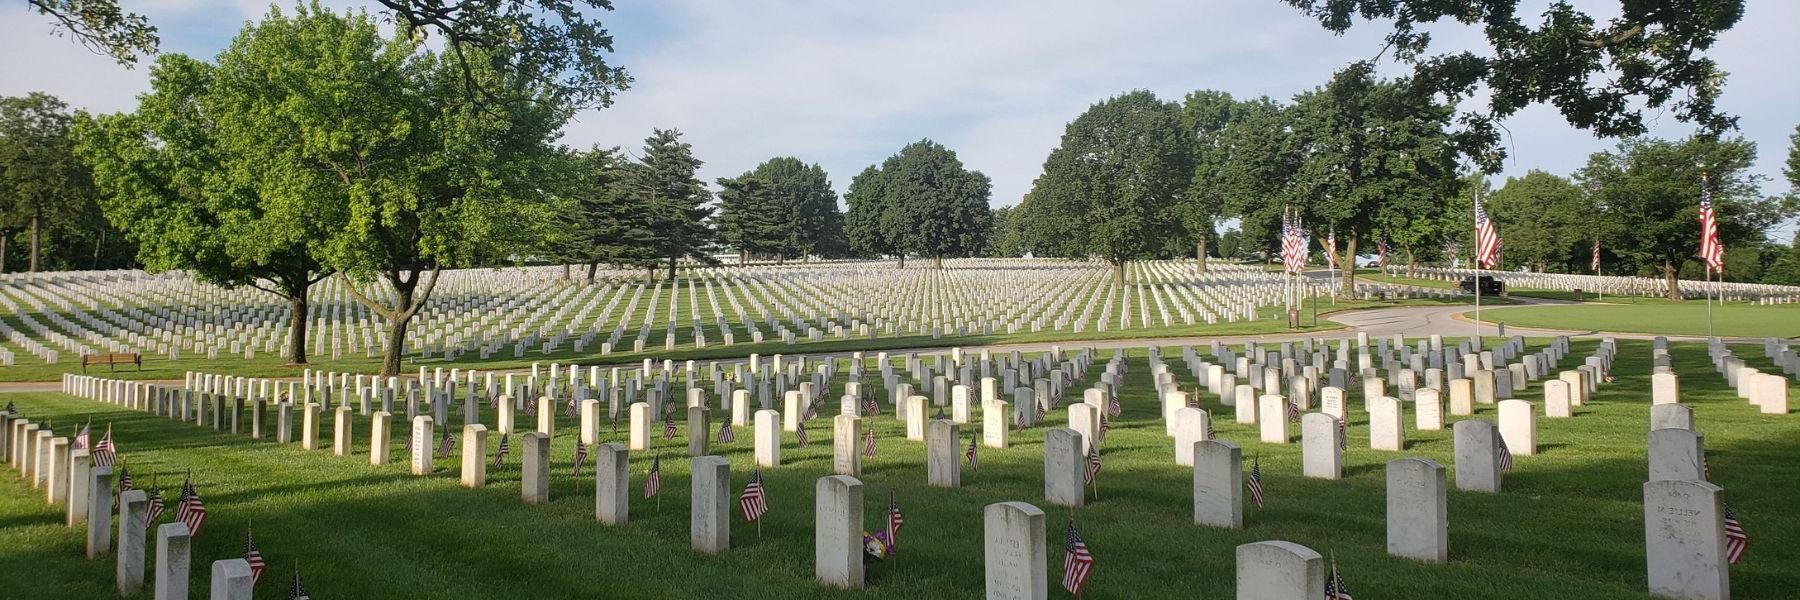 杰斐逊兵营 National Cemetery preserves St. 路易斯在《美国梦》中扮演的迷人角色.S. 军事历史.